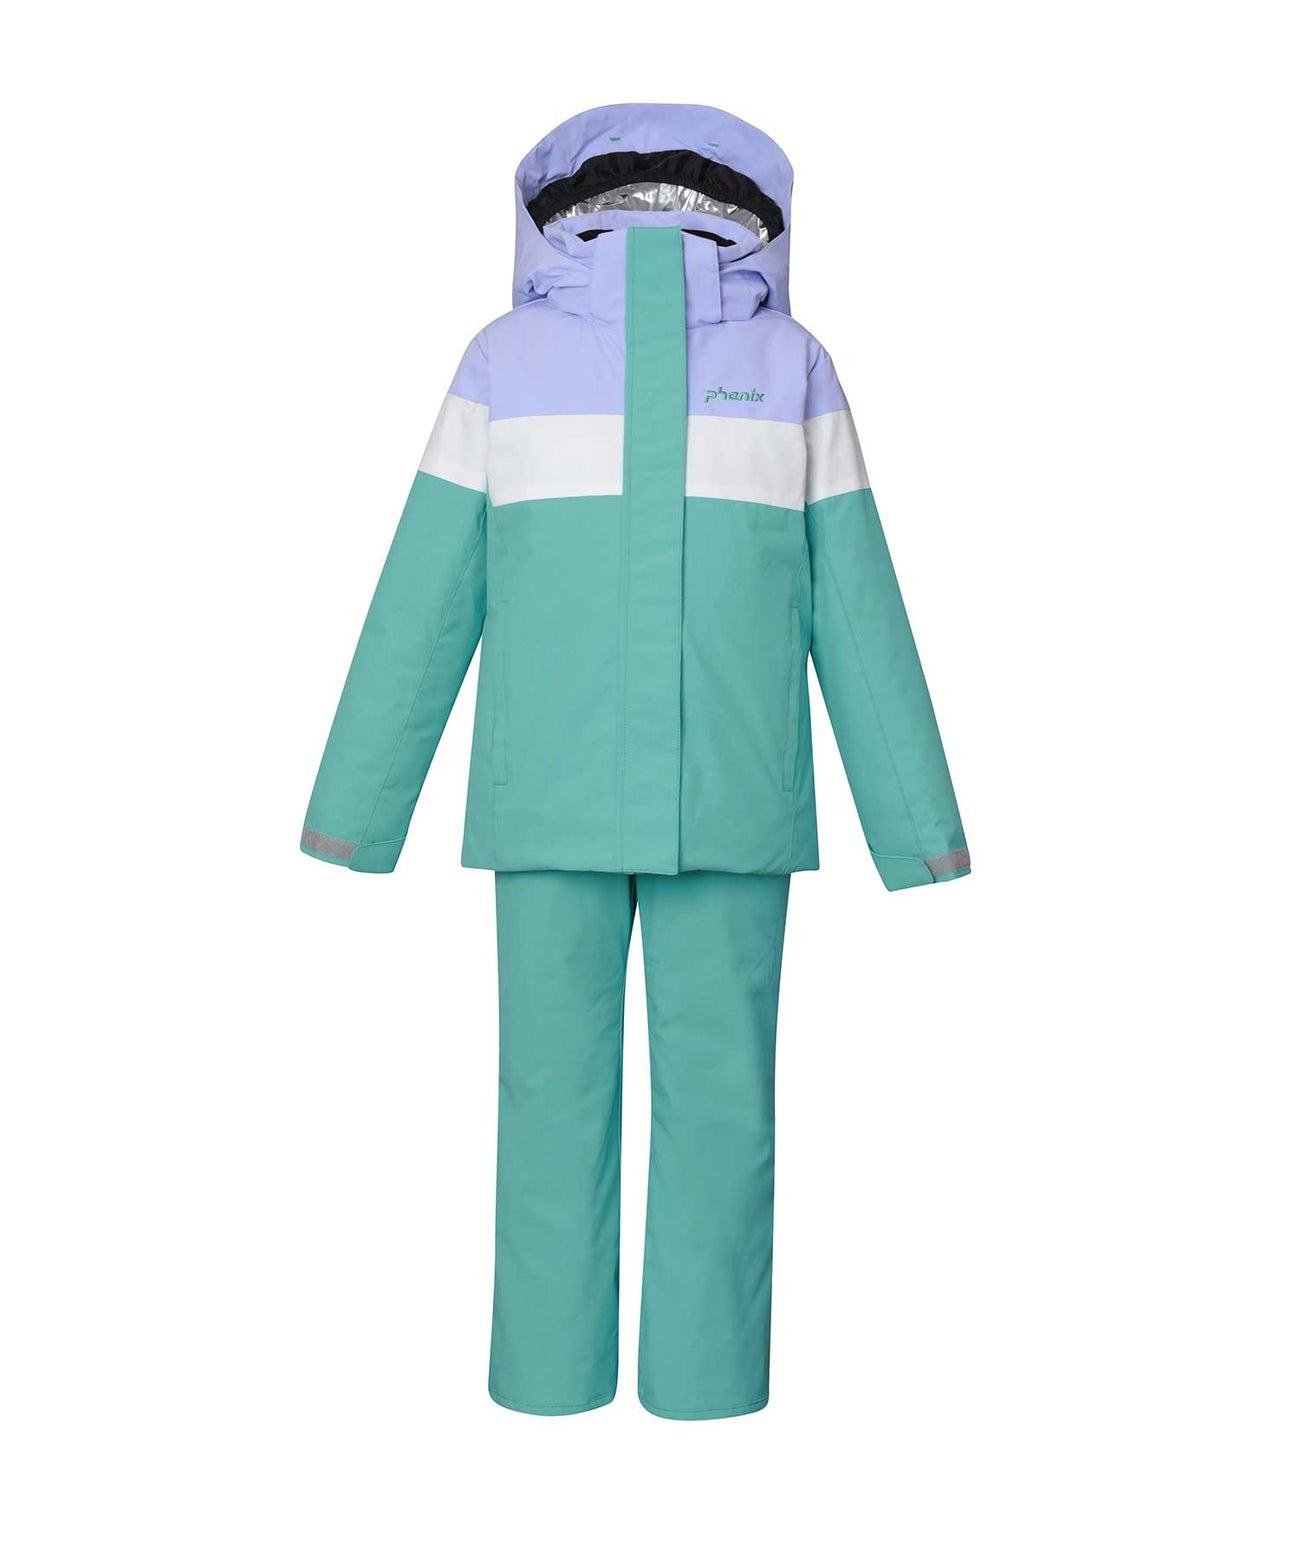 日本代购phenix菲尼克斯新品儿童专业滑雪服套装户外防水保暖外套 - 图2